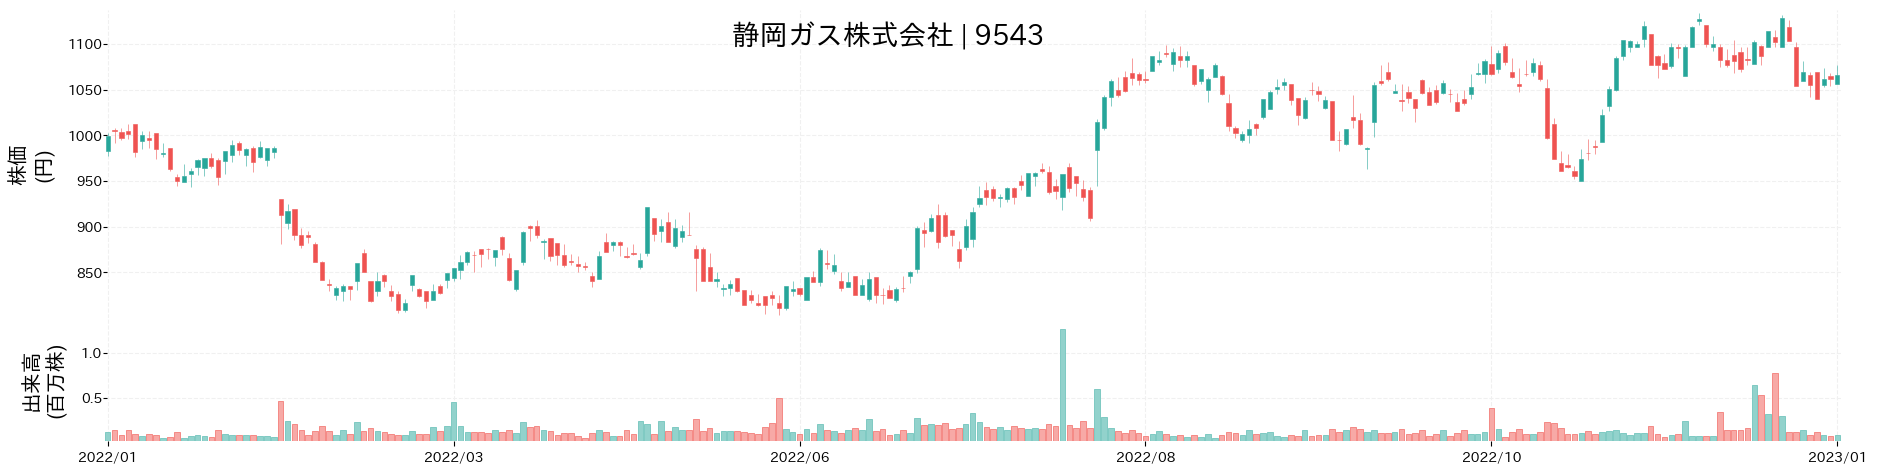 静岡ガスの株価推移(2022)